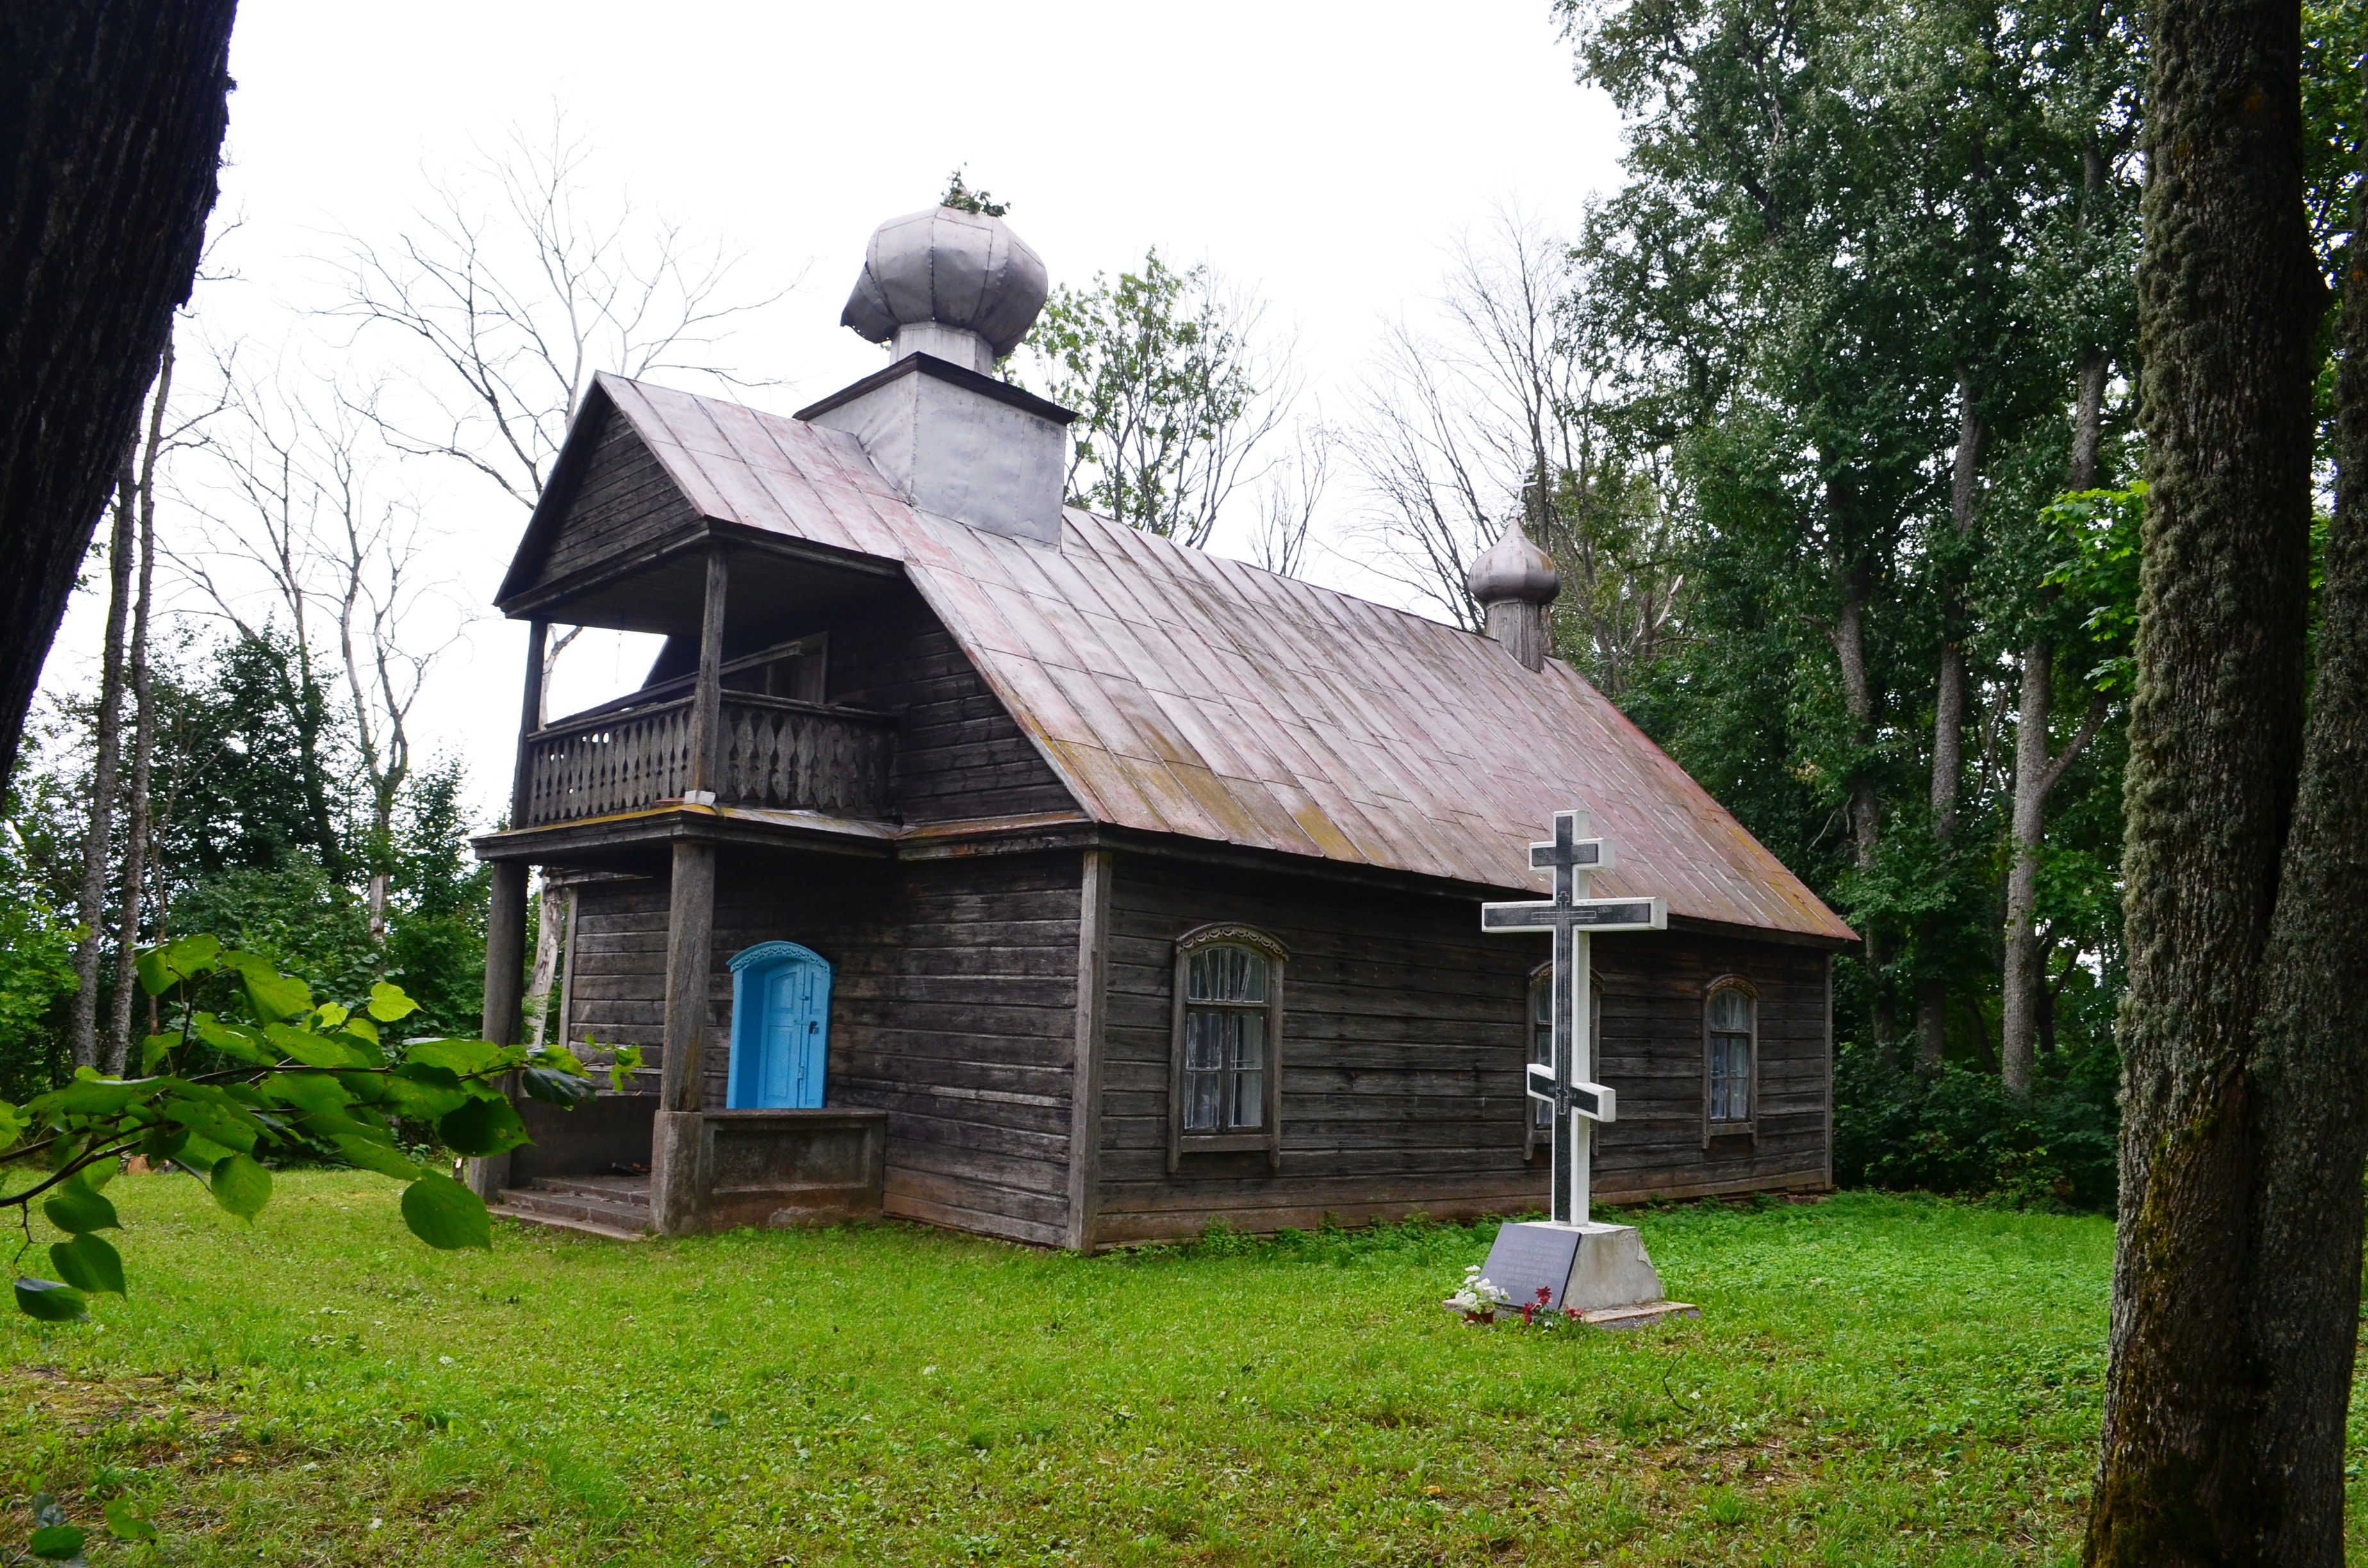 Pradėti seniausios Lietuvoje medinės sentikių cerkvės restauravimo darbai